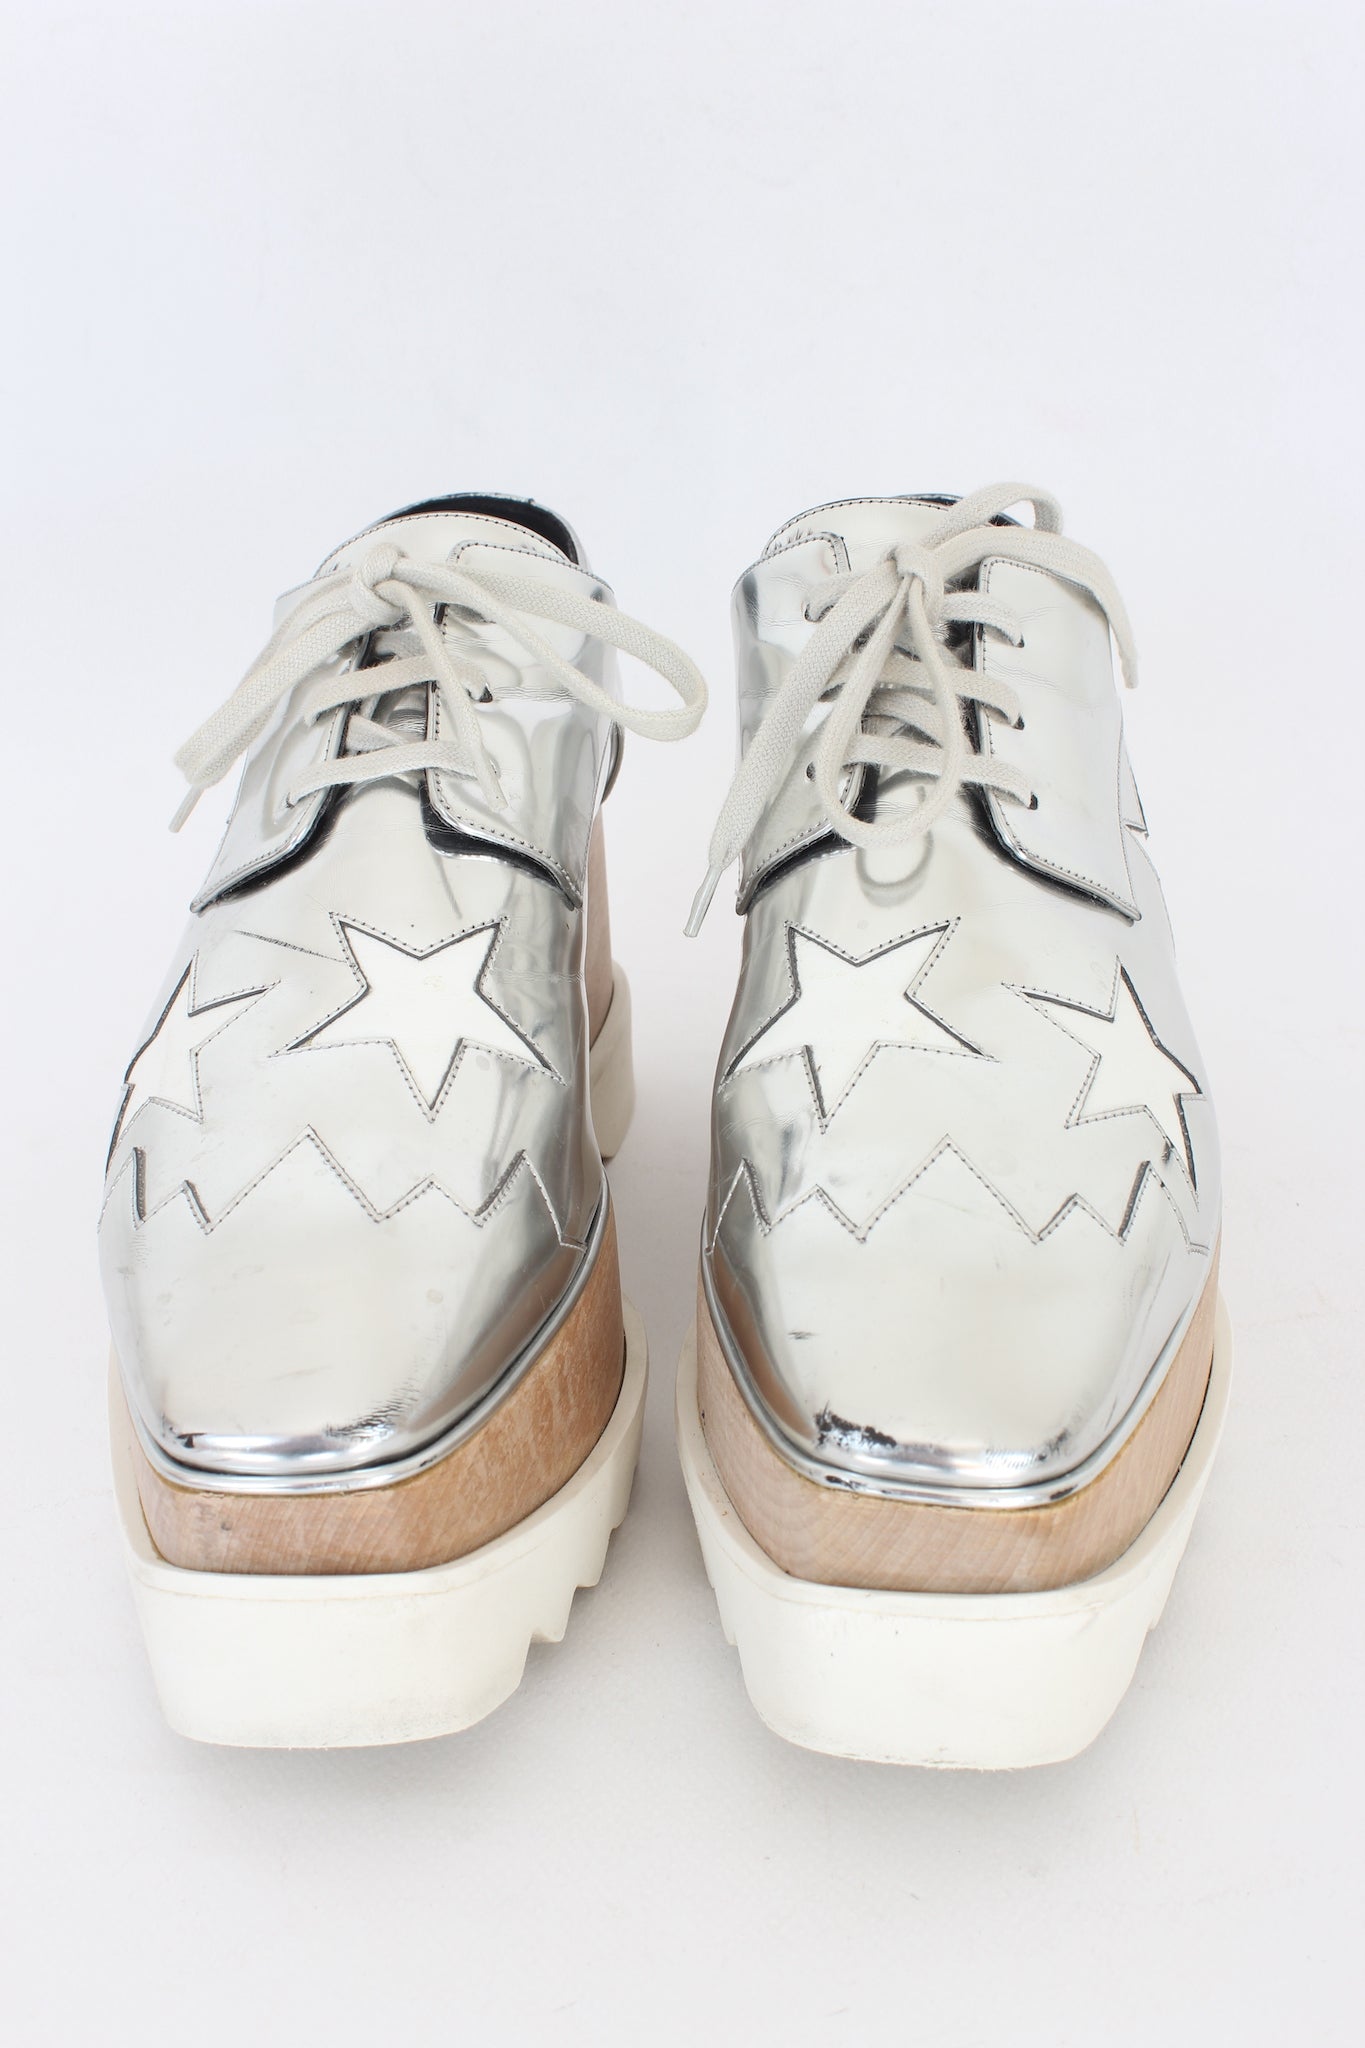 https://www.dedecouture.com/cdn/shop/files/stella-mccarteny-silver-derby-shoes-2020s2.jpg?v=1699355163&width=1445